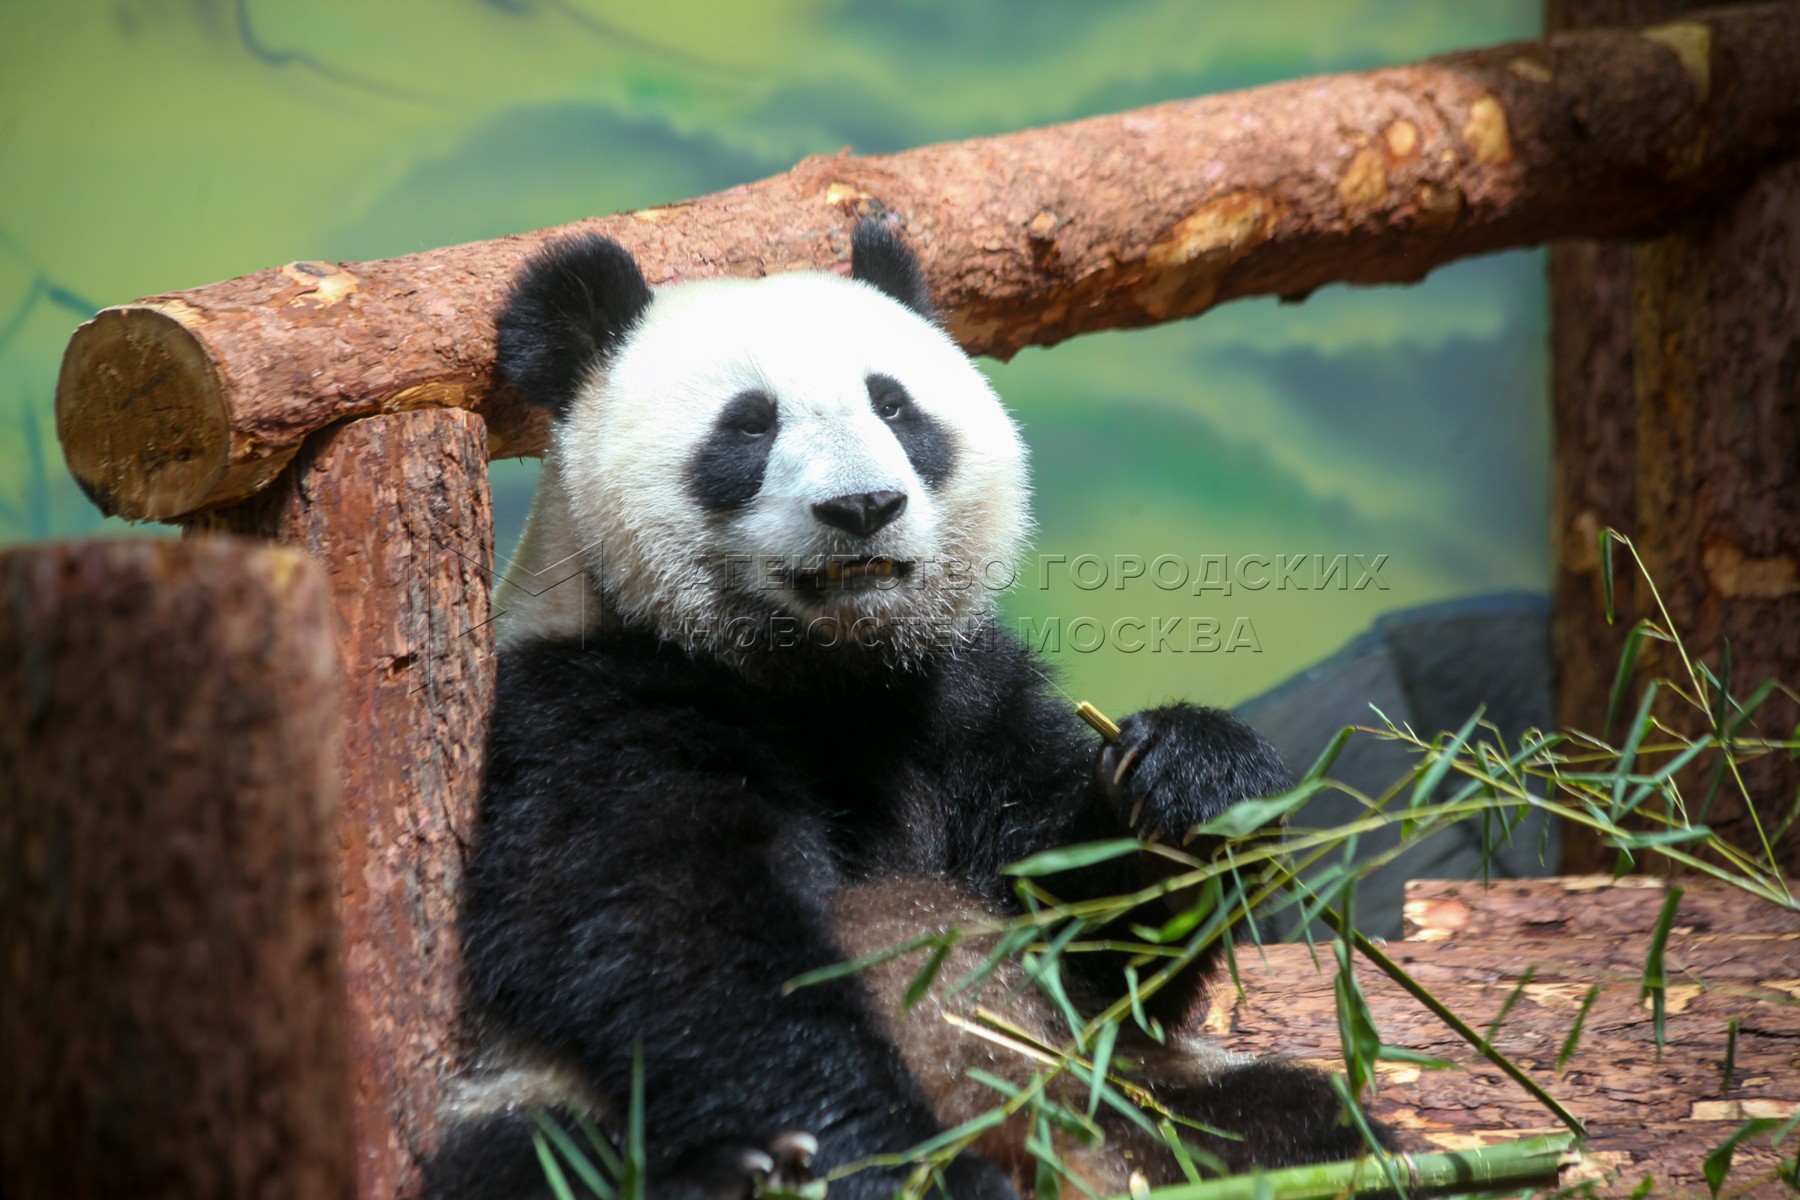 Зоопарк увидеть панду. Панда жуи в Московском зоопарке. Большая Панда в Московском зоопарке. Зоопарк Москва панды жуи. Московский зоопарк панды жуи и Диндин.